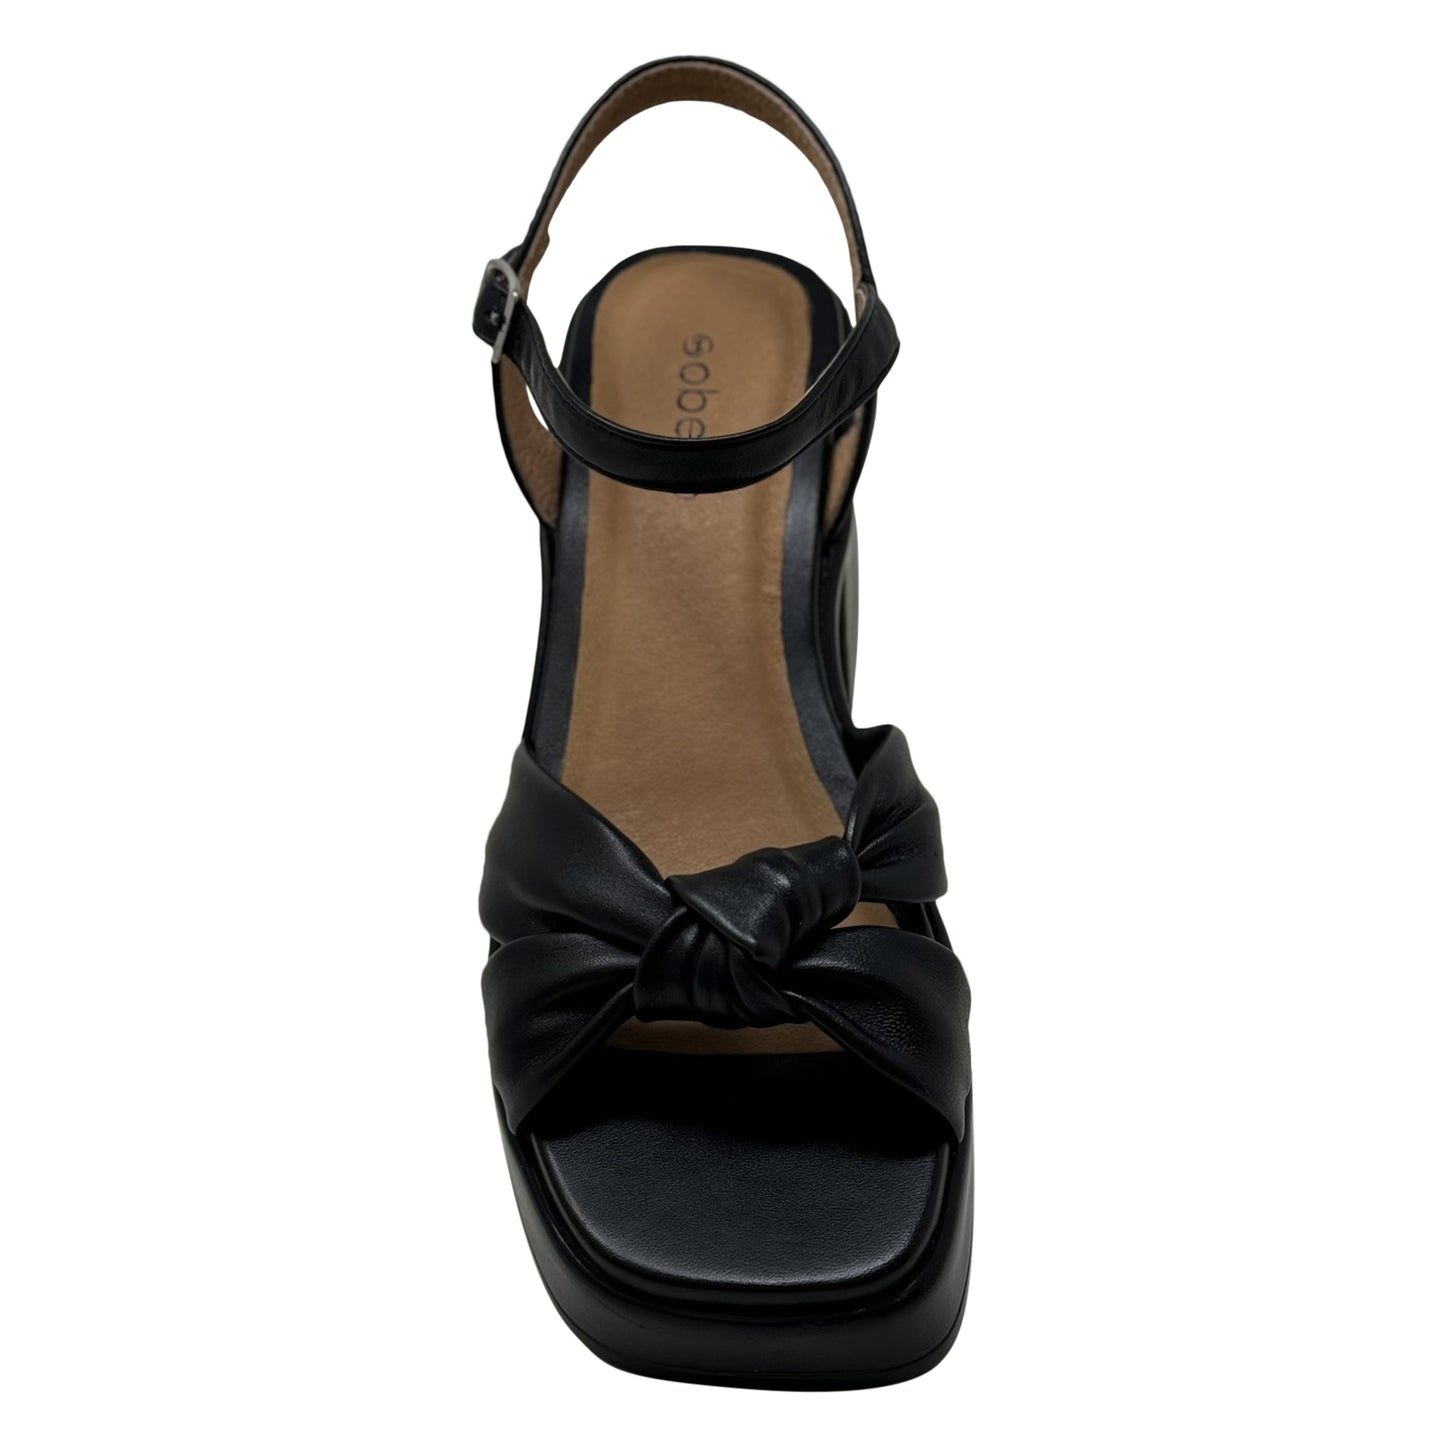 SOBEYO Criss-Cross Bell-Shape Block Heels Ankle Strap Black Leather